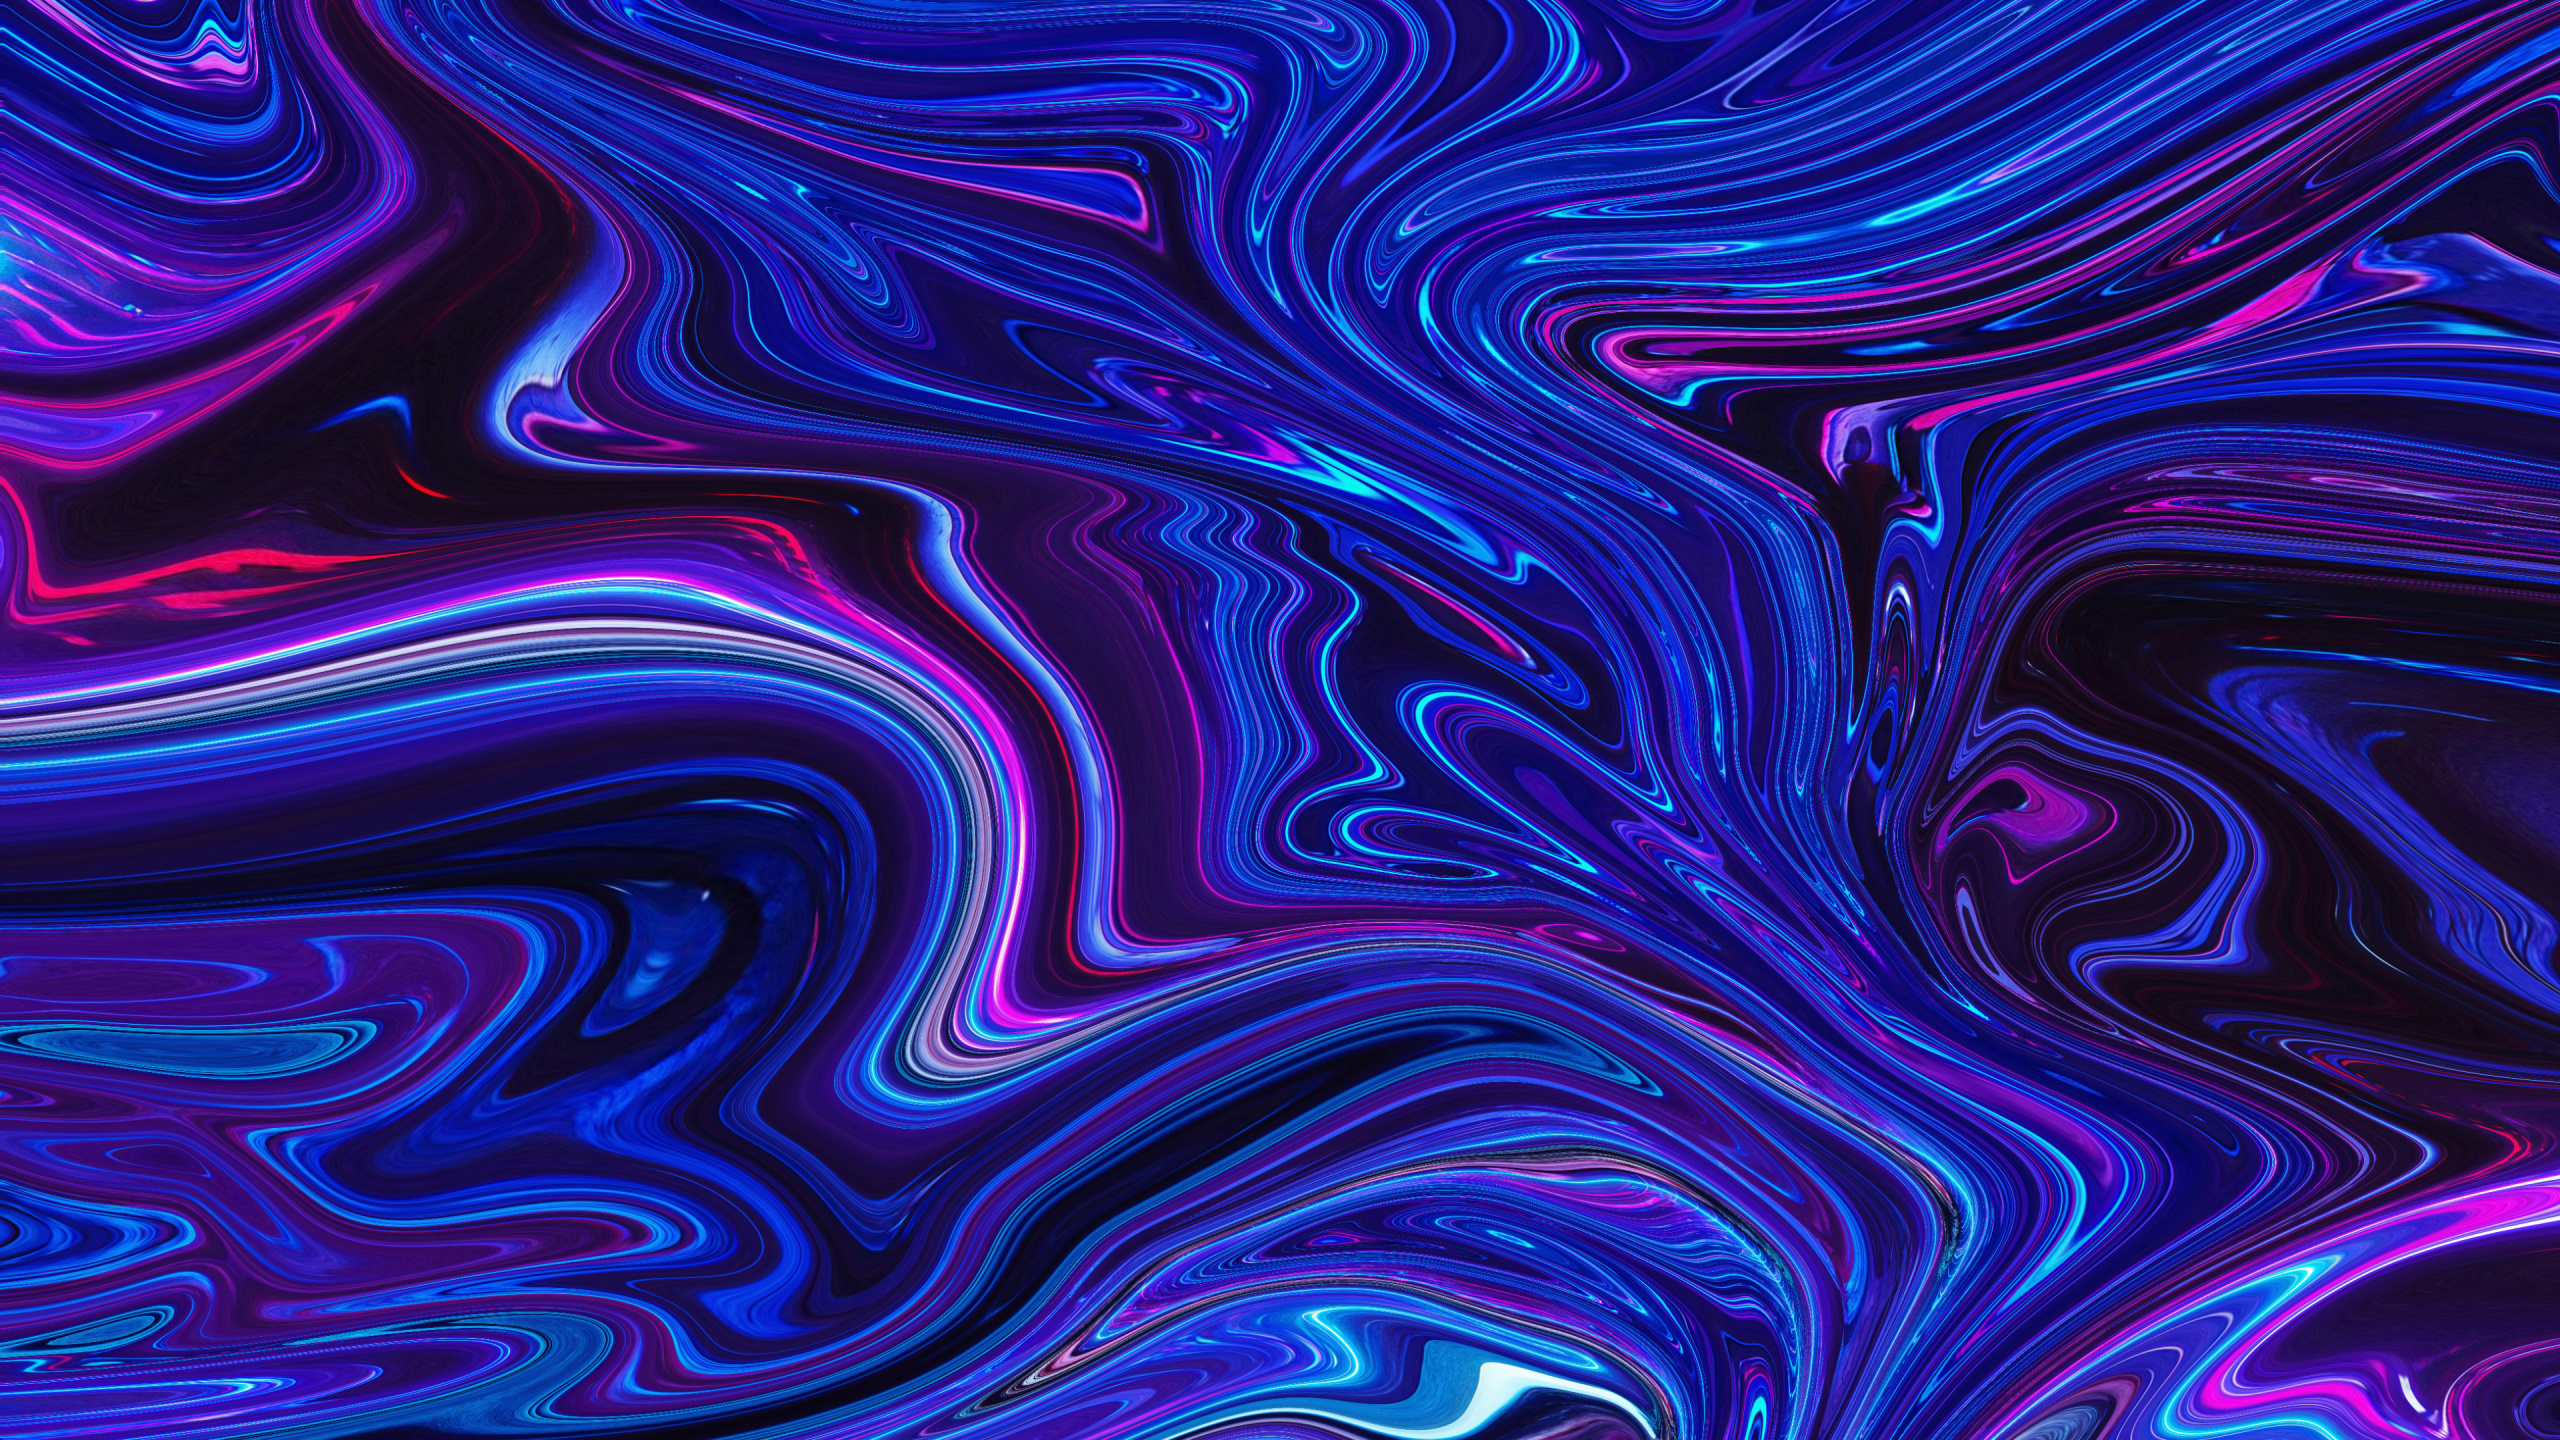 分形技术, 艺术, Azure, 紫色的, 紫罗兰色 壁纸 2560x1440 允许